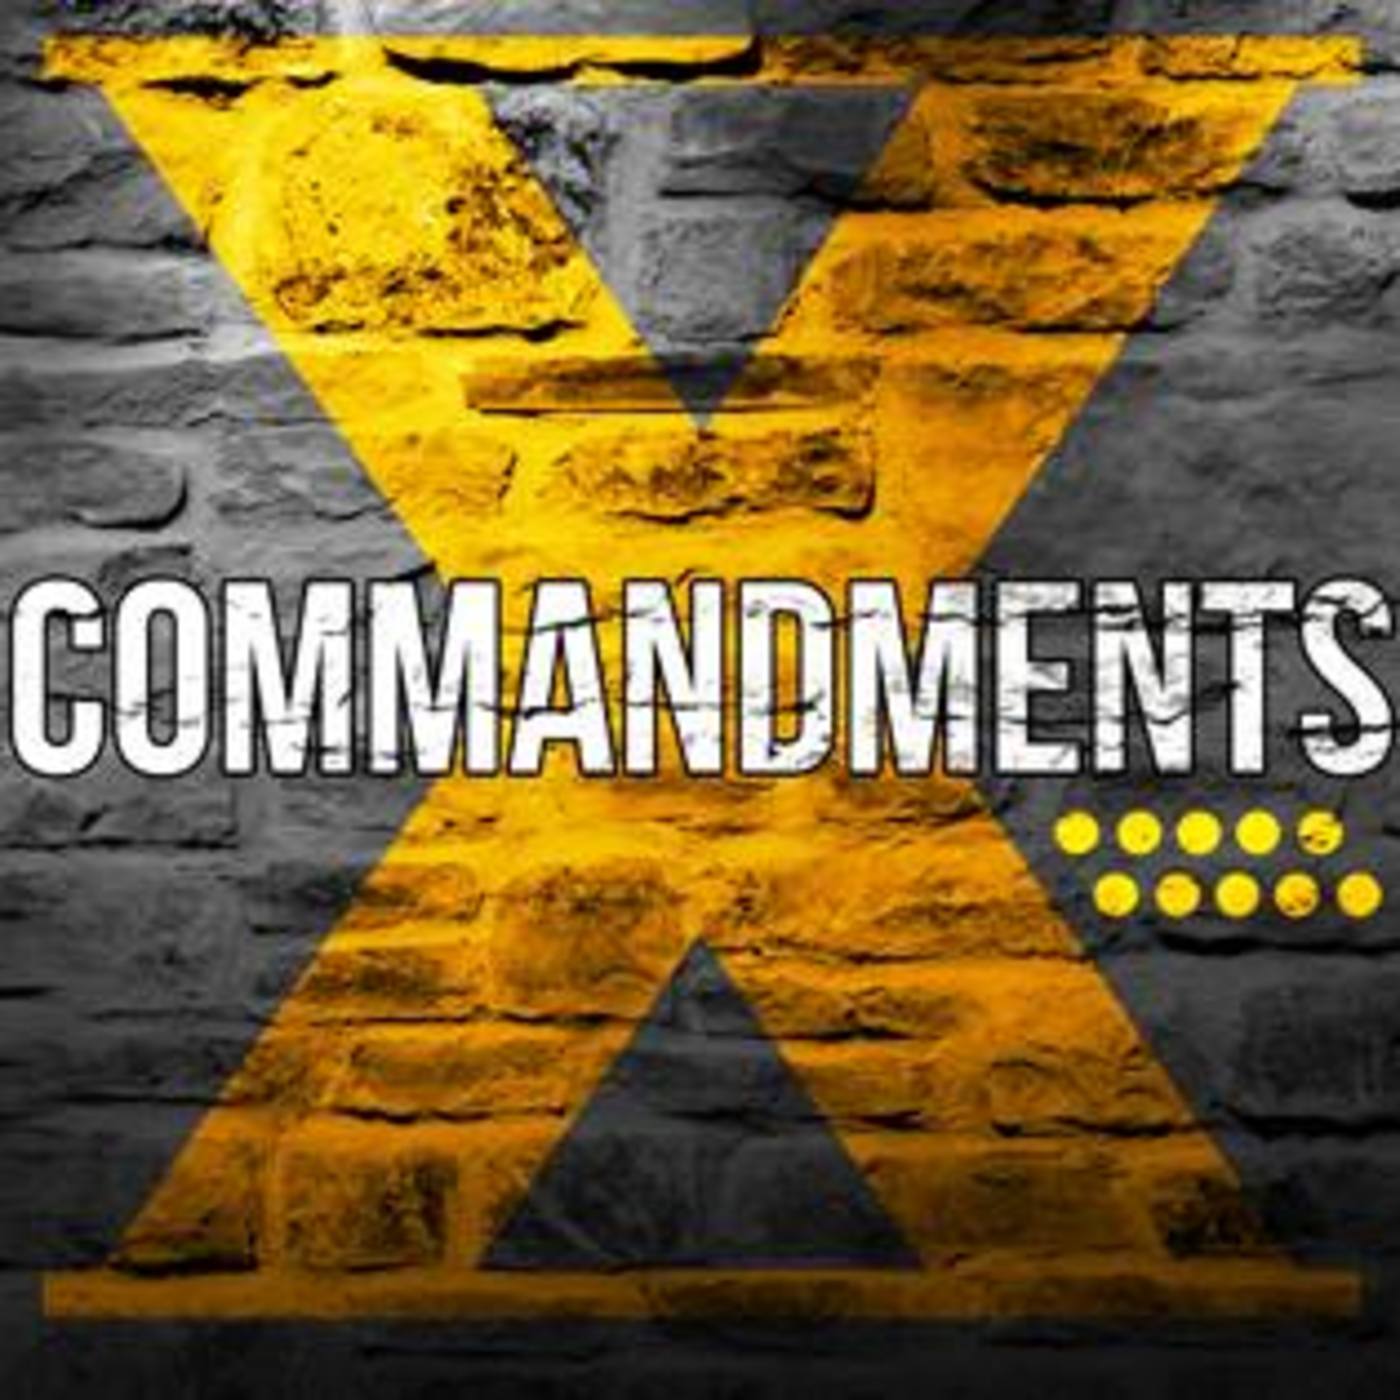 The X Commandments: Part 10